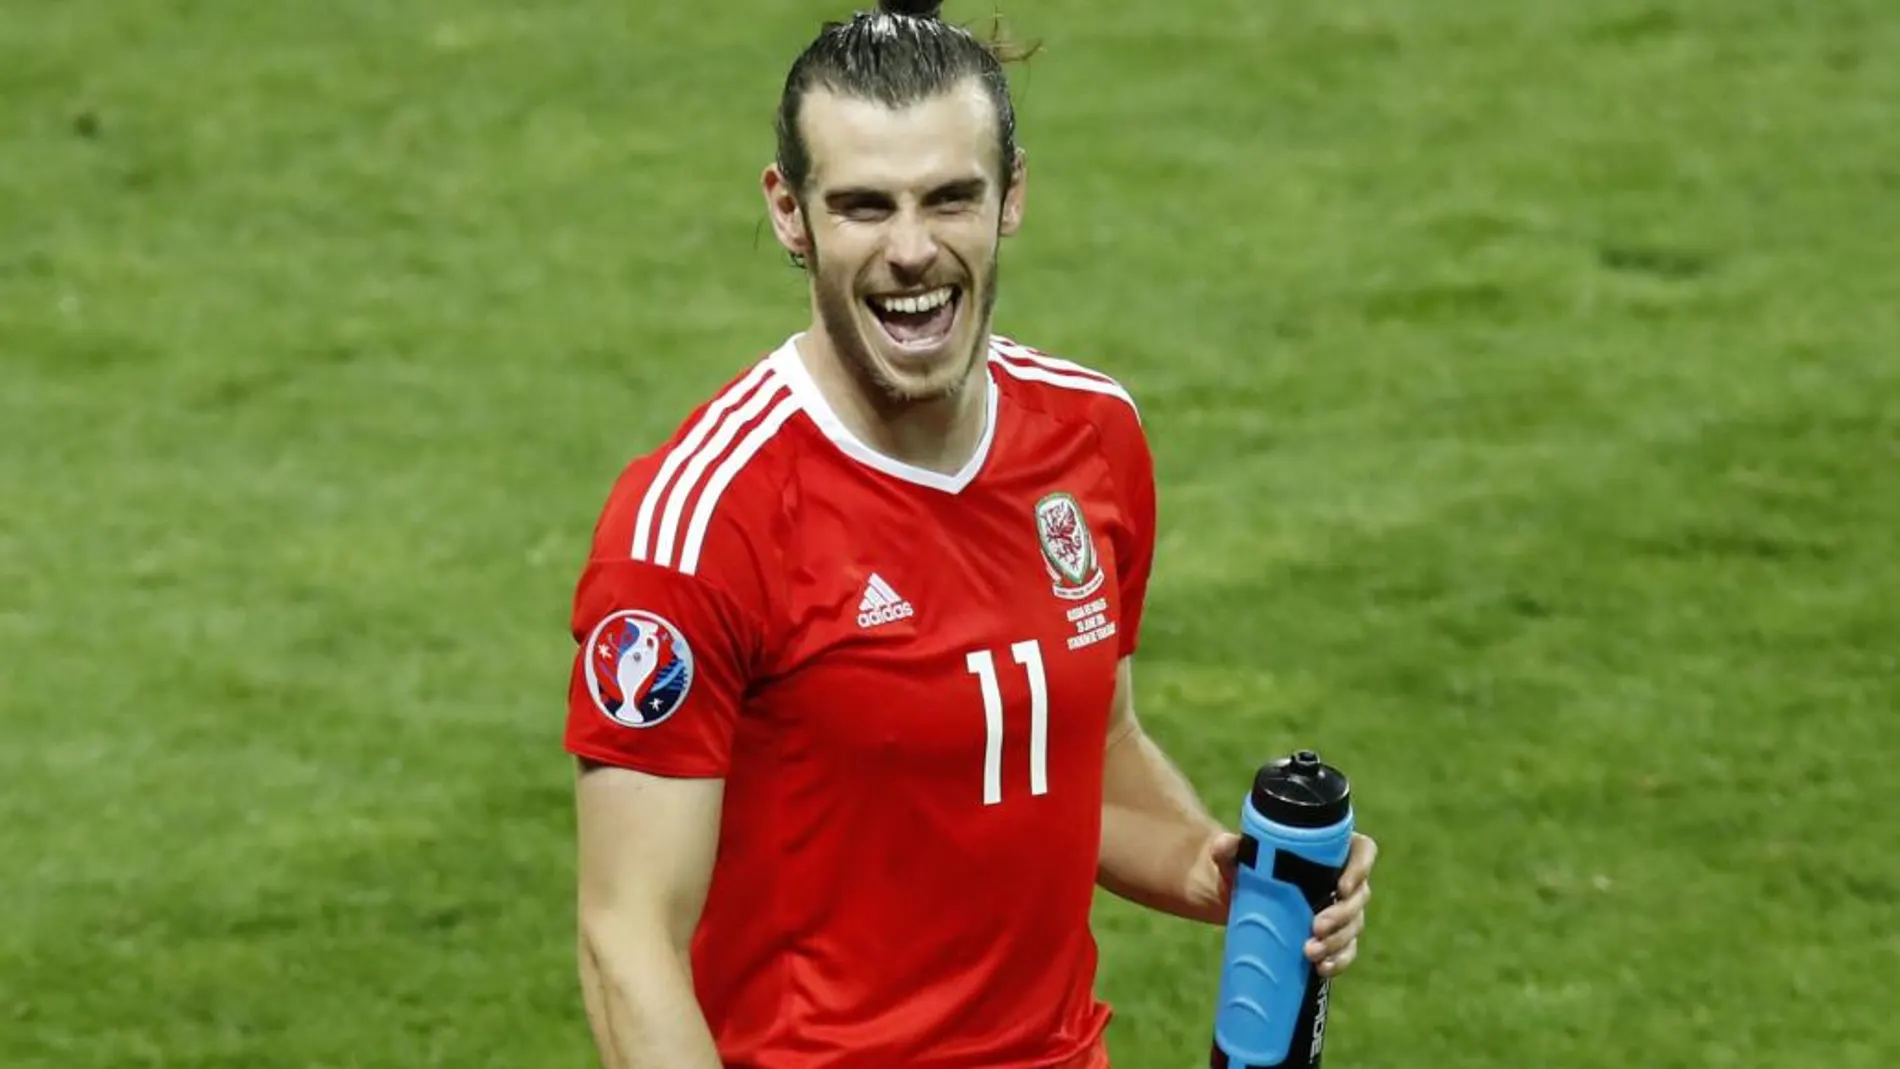 El galés Gareth Bale pasaría a ser extracomunitario en el Real Madrid